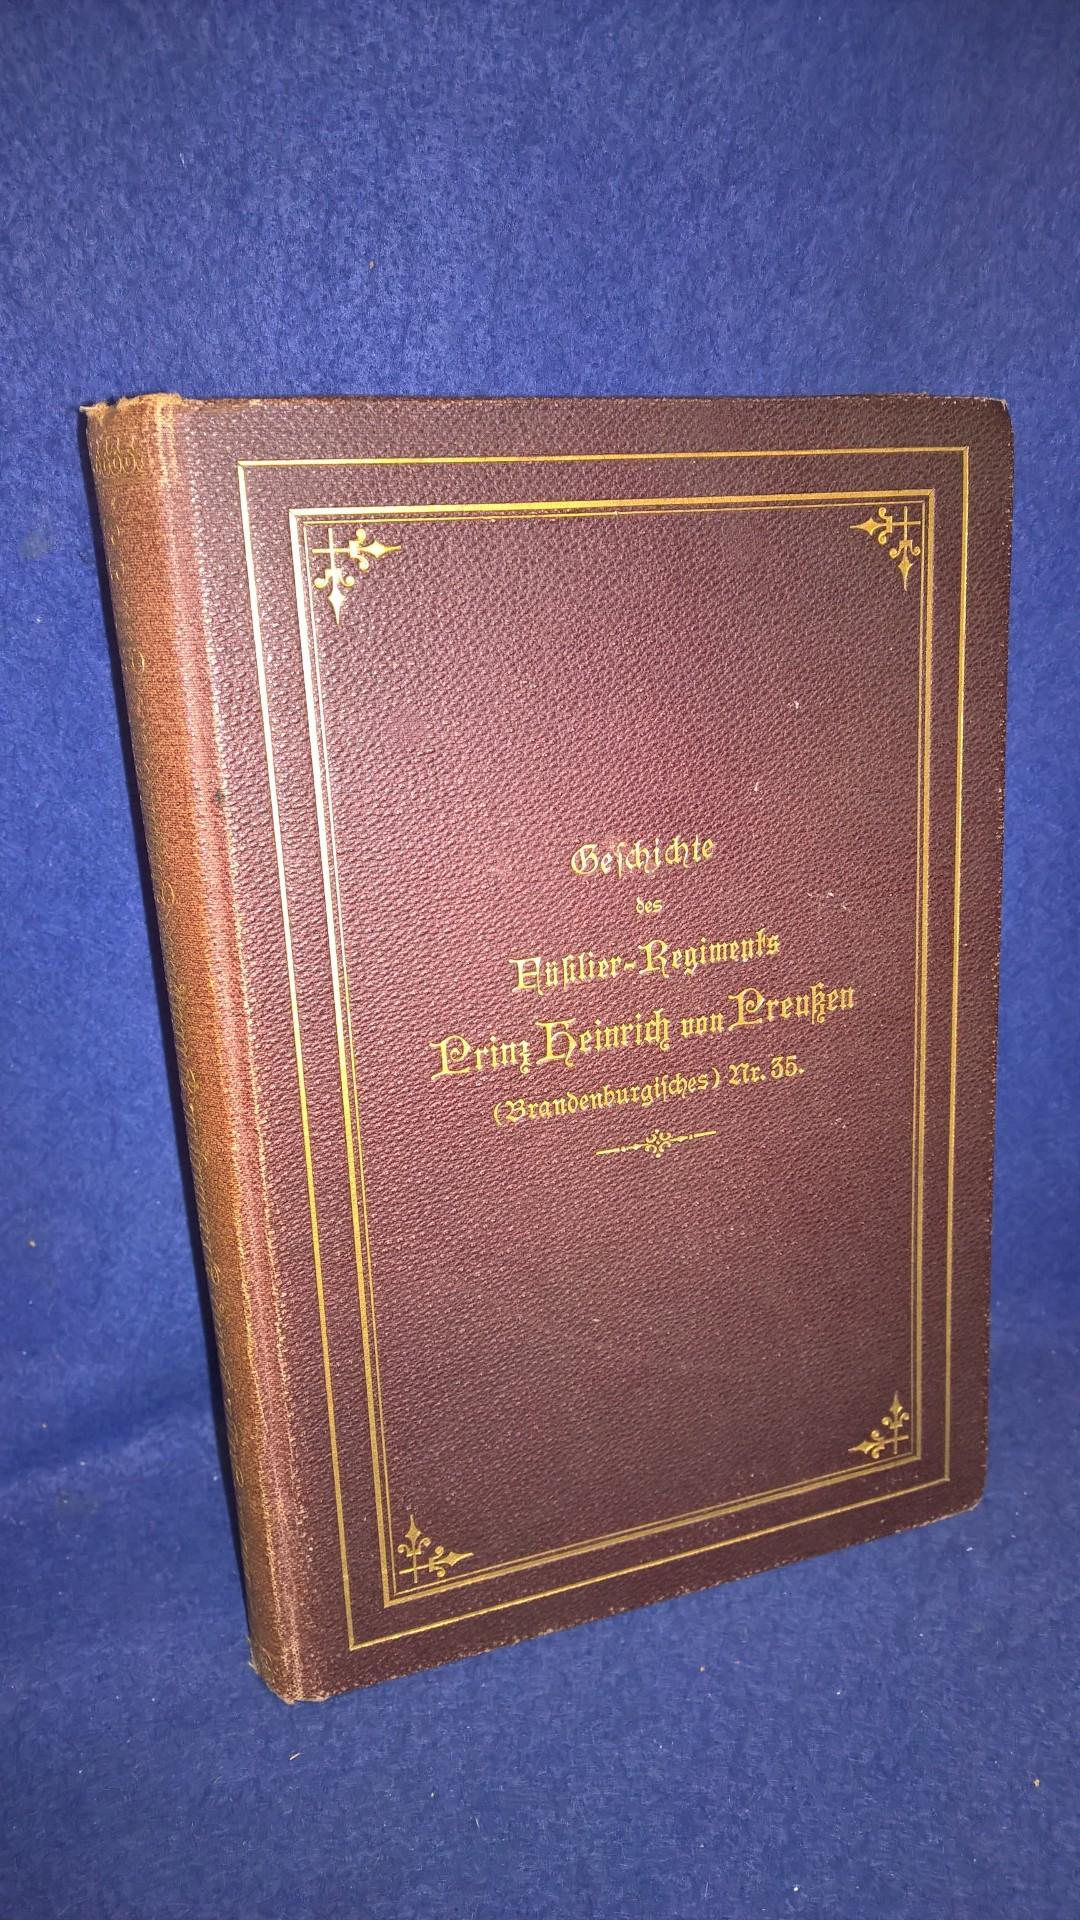 Geschichte des Füsilier-Regiments Prinz Heinrich von Preußen (Brandenburgisches) Nr. 35. Ein Rückblick auf die Geschichte desselben.